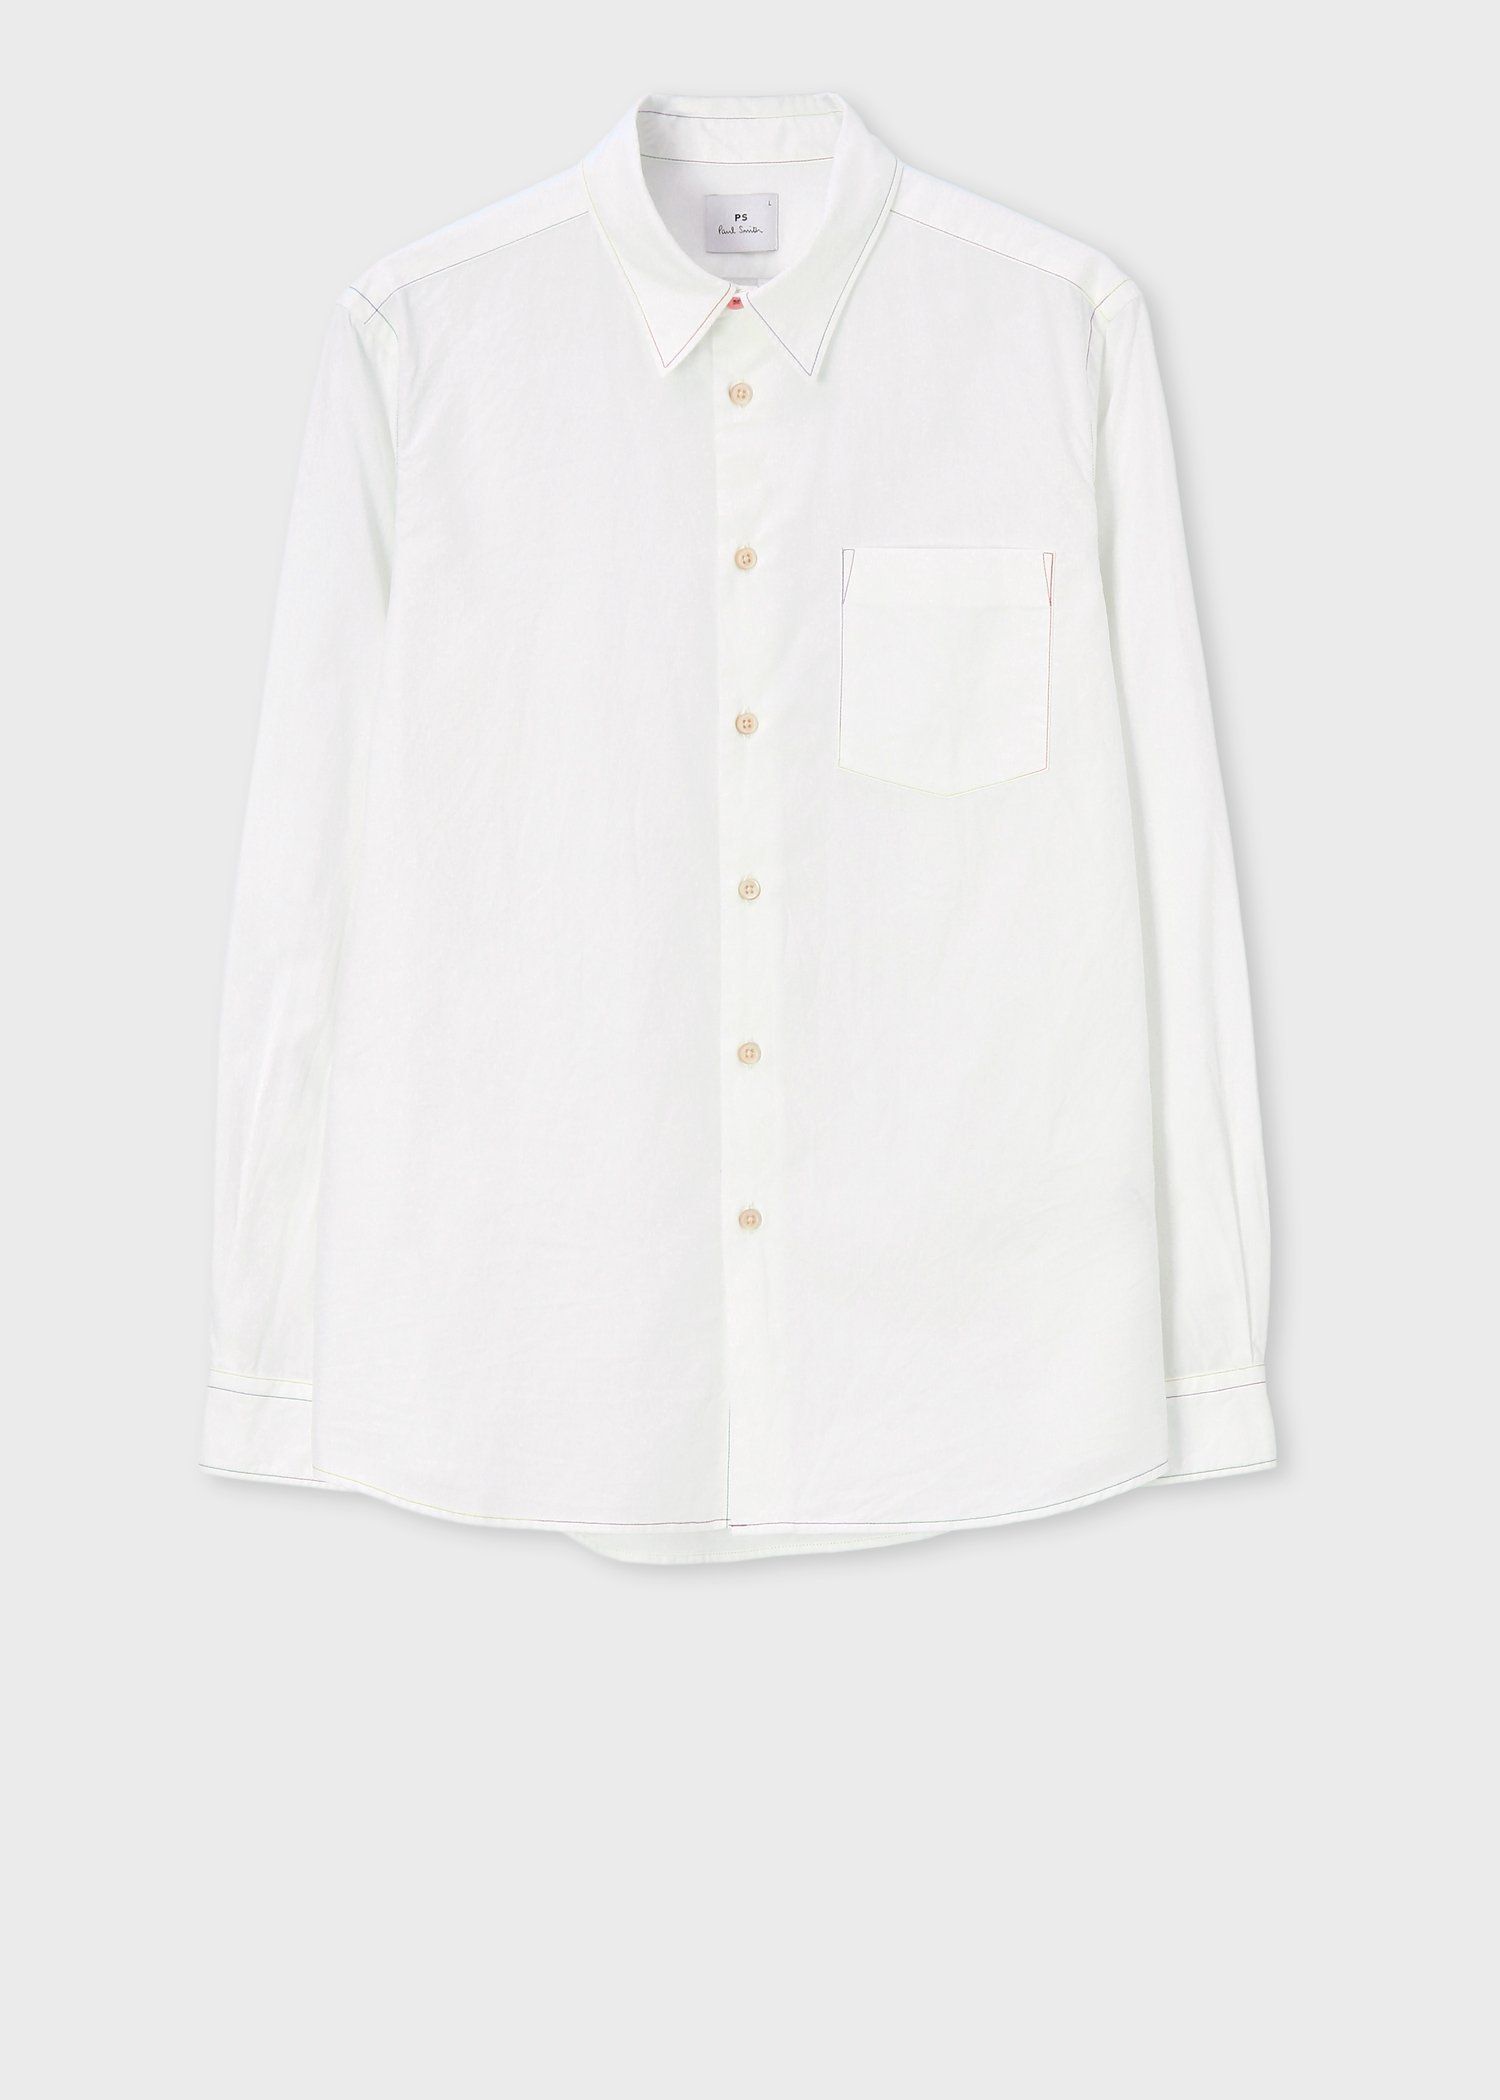 シャツポール・スミス メンズ ワイシャツ (90016388）